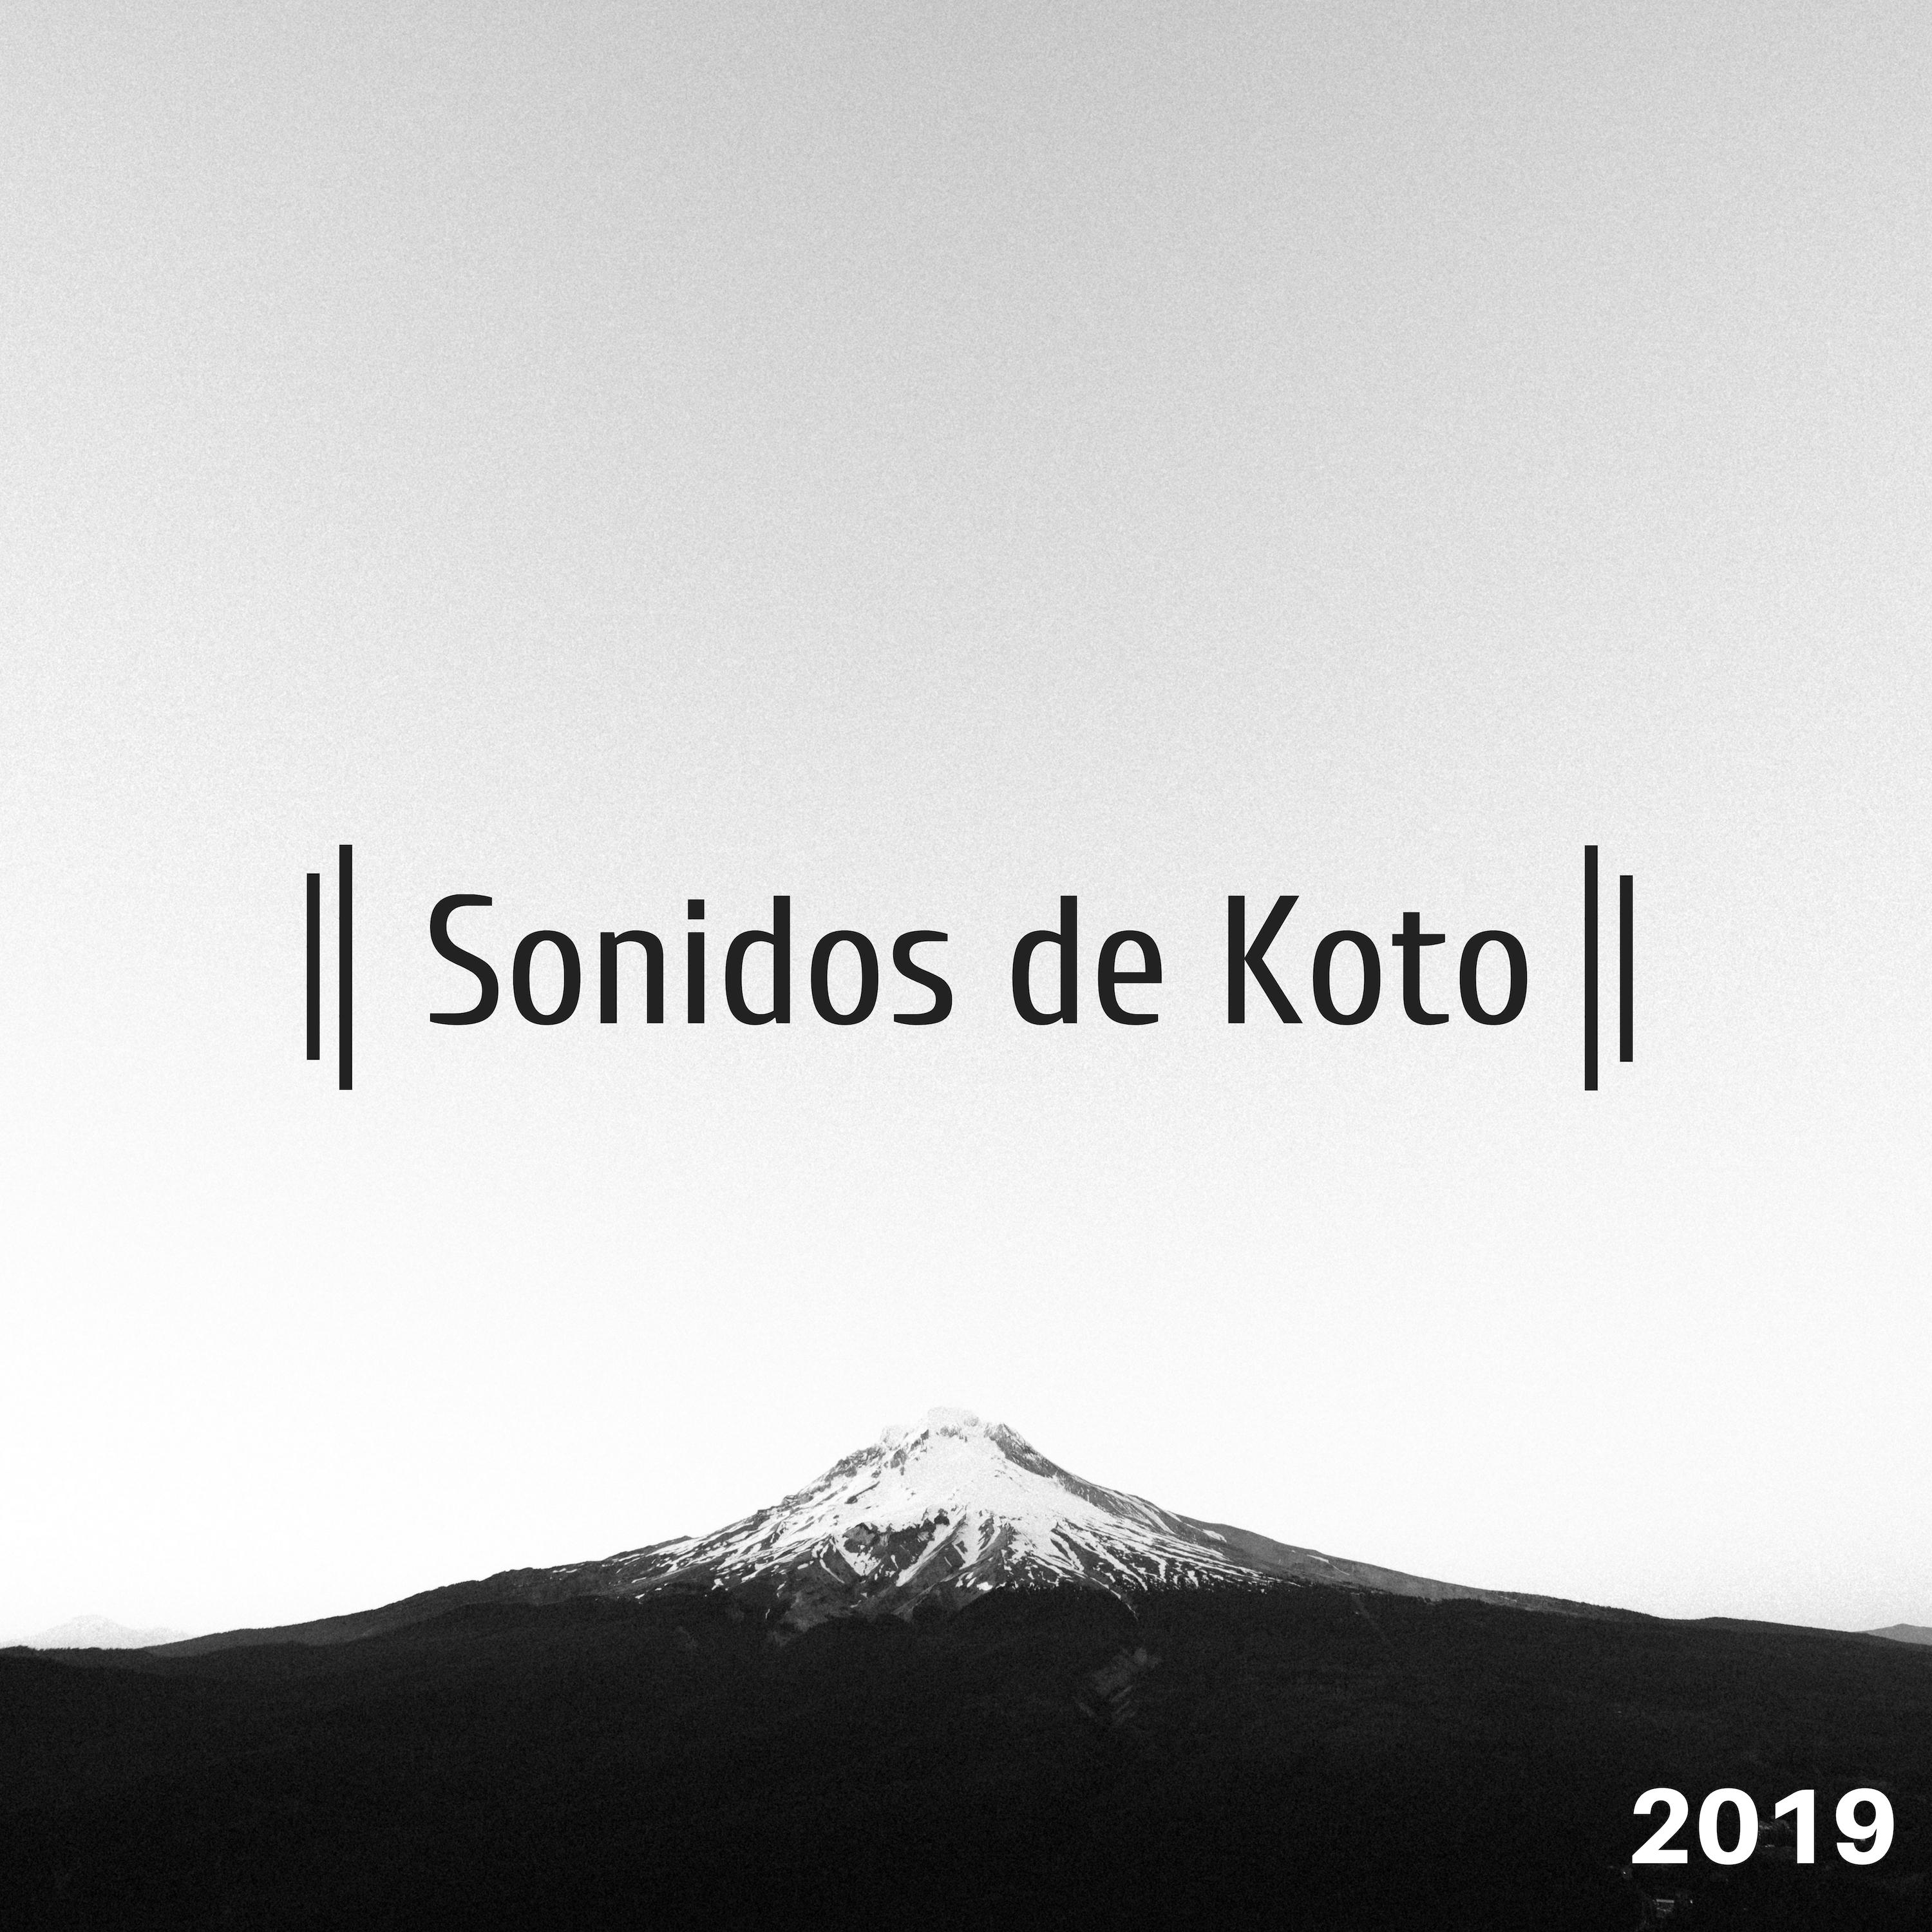 Sonidos de Koto 2019 - Melodías Asiáticas Tranquilas y Suaves Descansar Dormir y Relajarse Profundamente